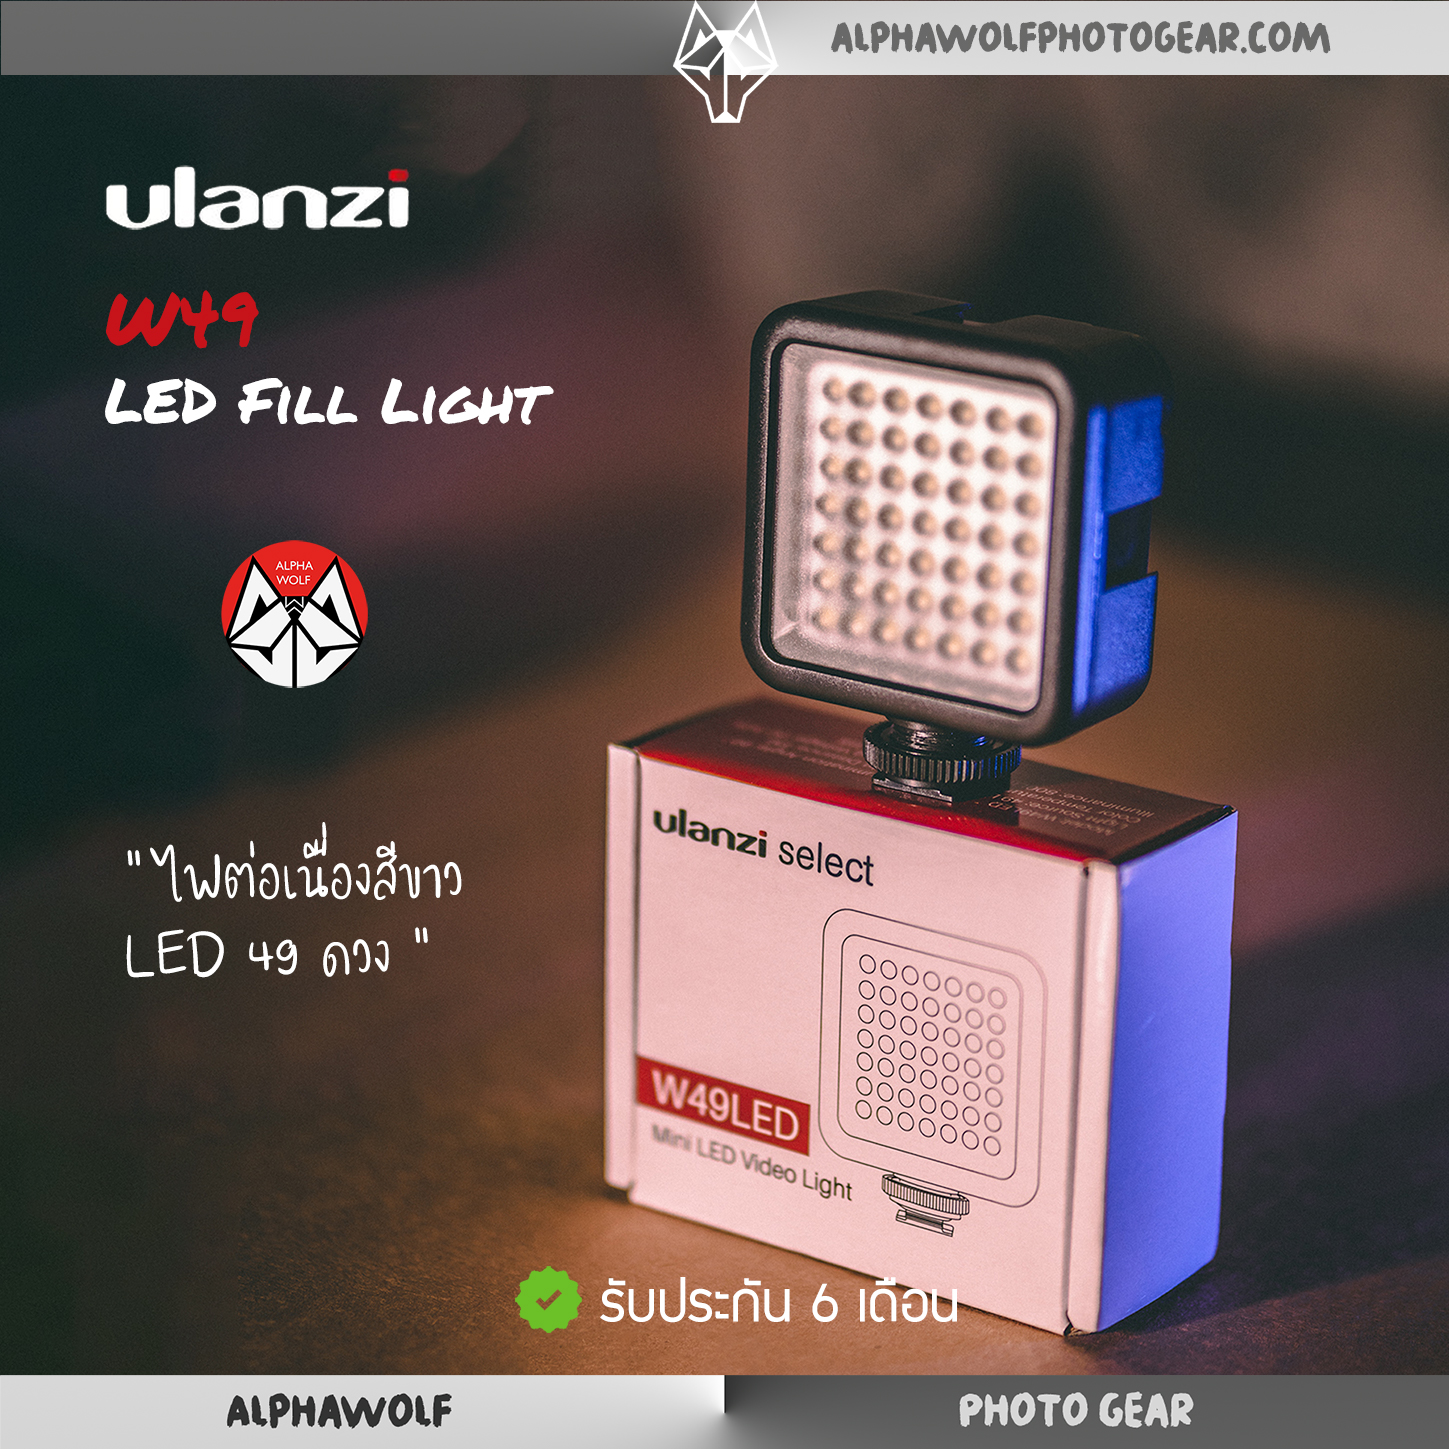 Ulanzi W49 LED Fill Light ไฟต่อเนื่อง แสงสีขาว 6000K LED 49ดวง ไฟติดกล้อง ไฟติดมือถือ สำหรับงานไลฟ์สด งานวีดีโอ Outdoor รับประกัน 6เดือน | ALPHAWOLF